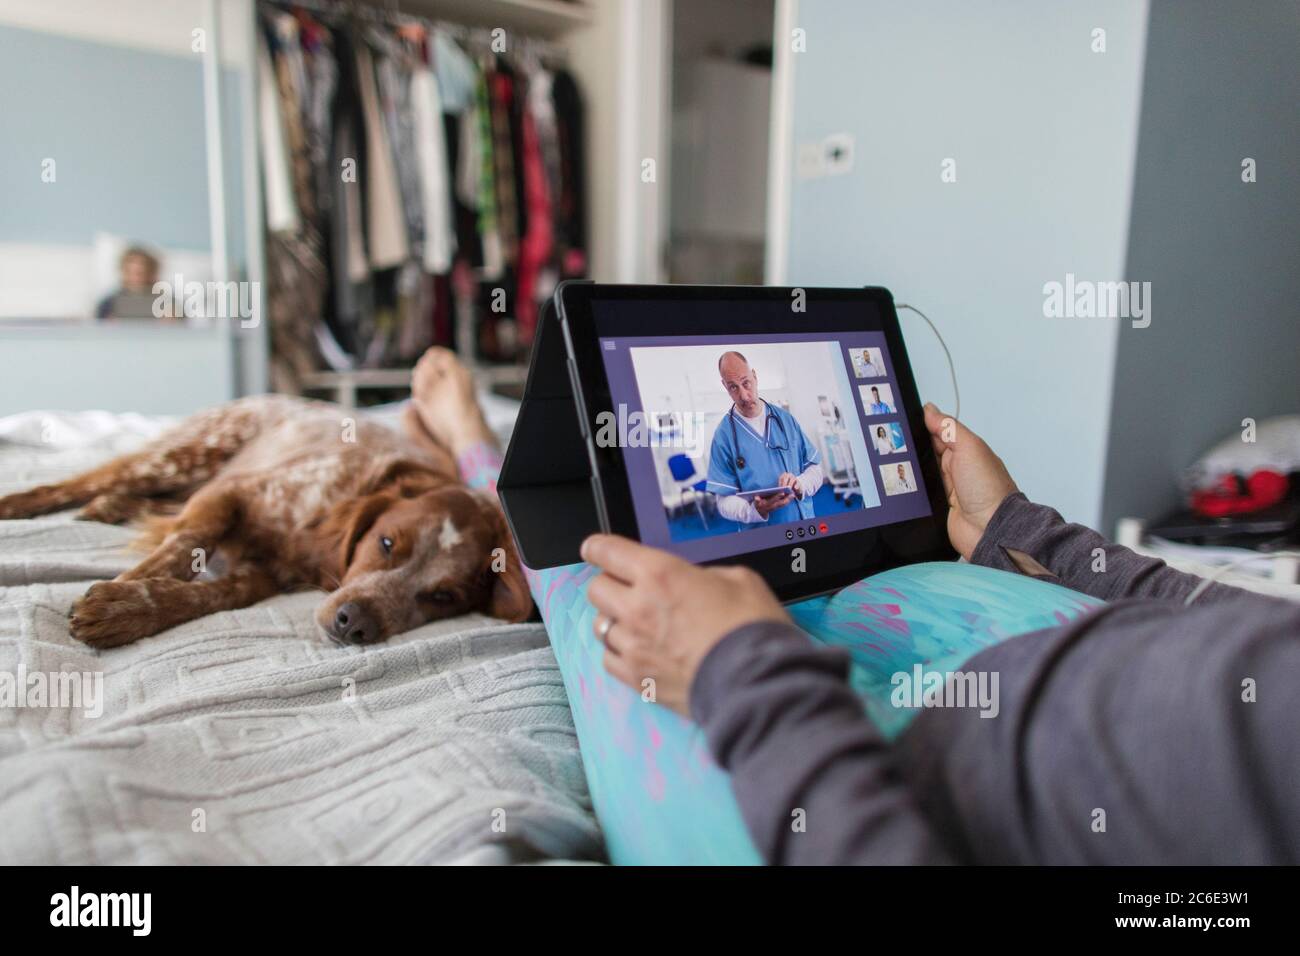 Femme avec tablette numérique chat vidéo avec un médecin au lit avec un chien Banque D'Images